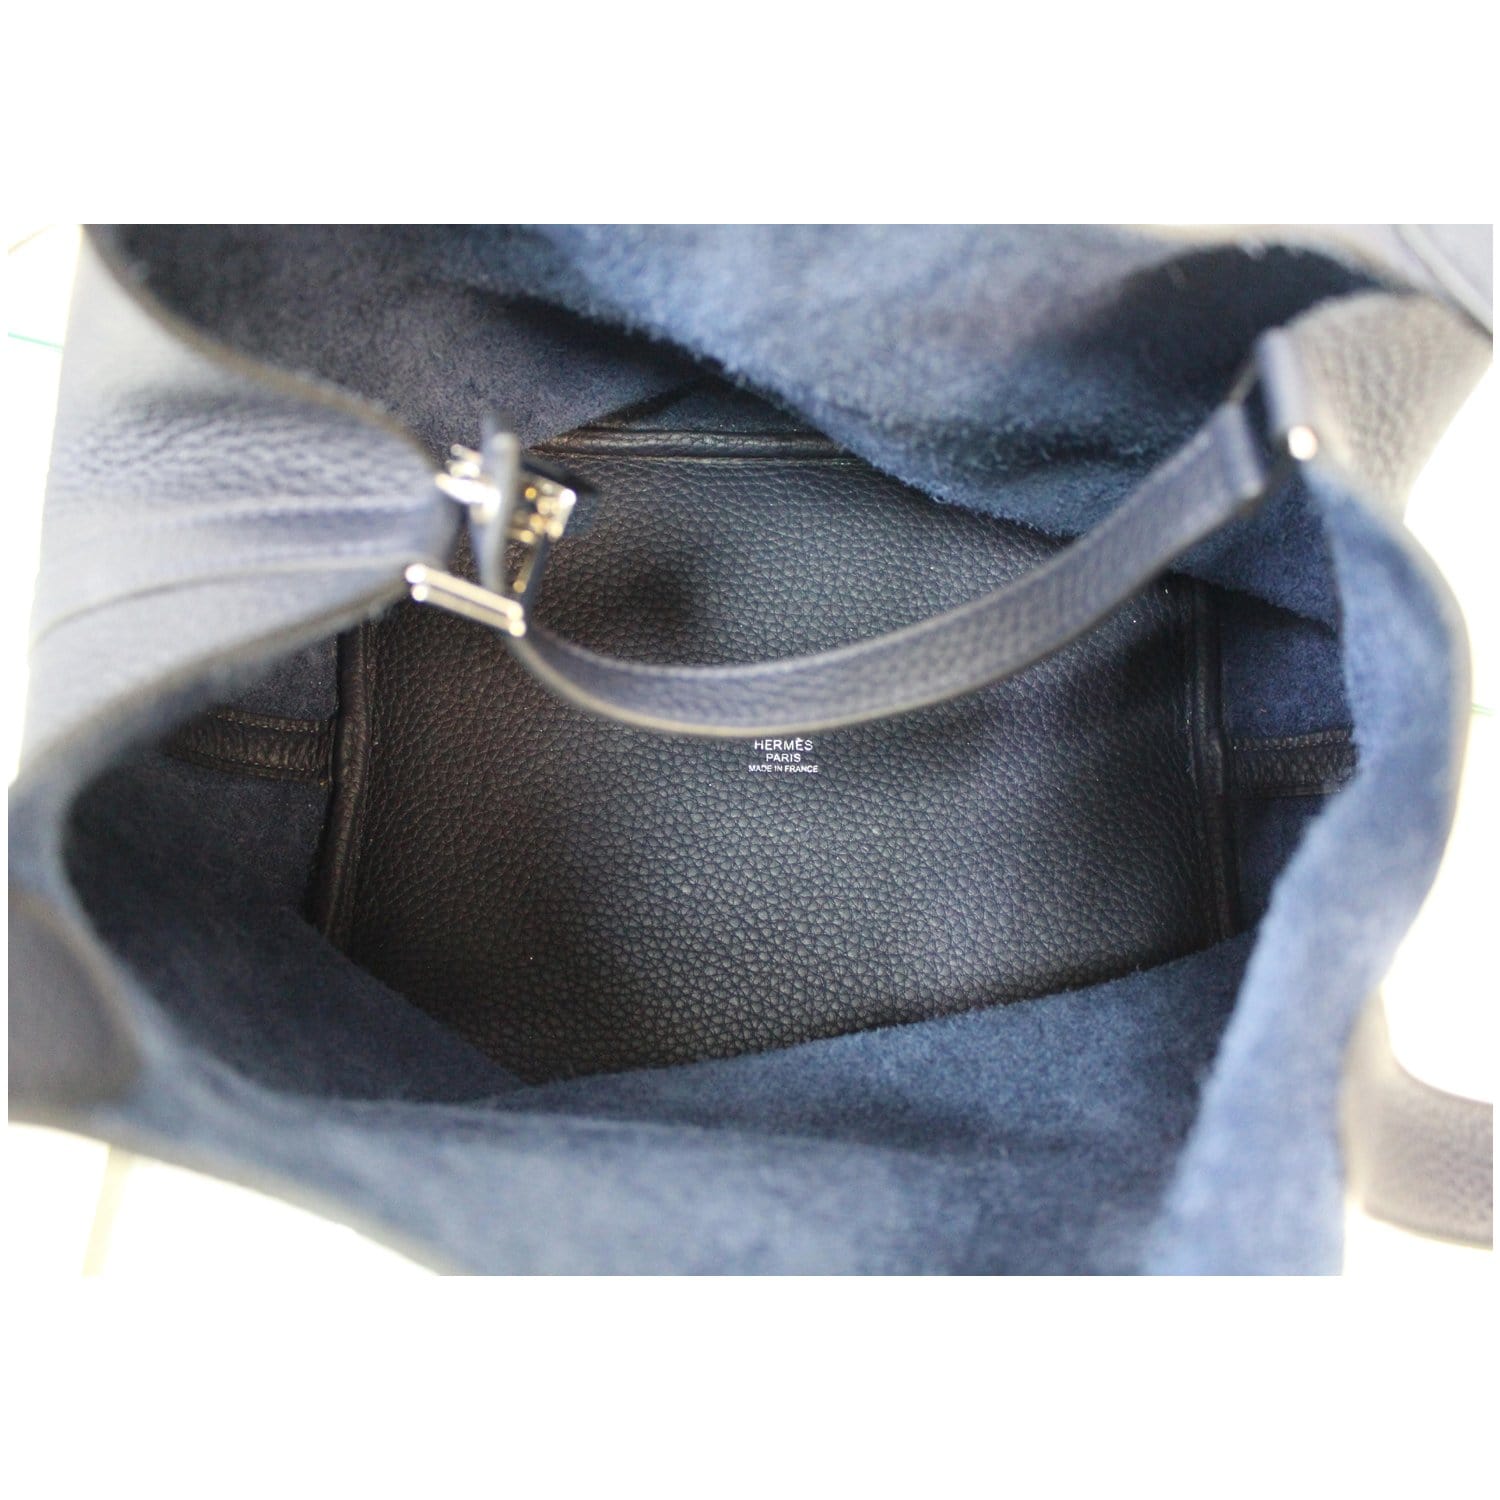 Hermes Picotin Lock 22 Bag Tressage Bleu Encre / Brique / Noir